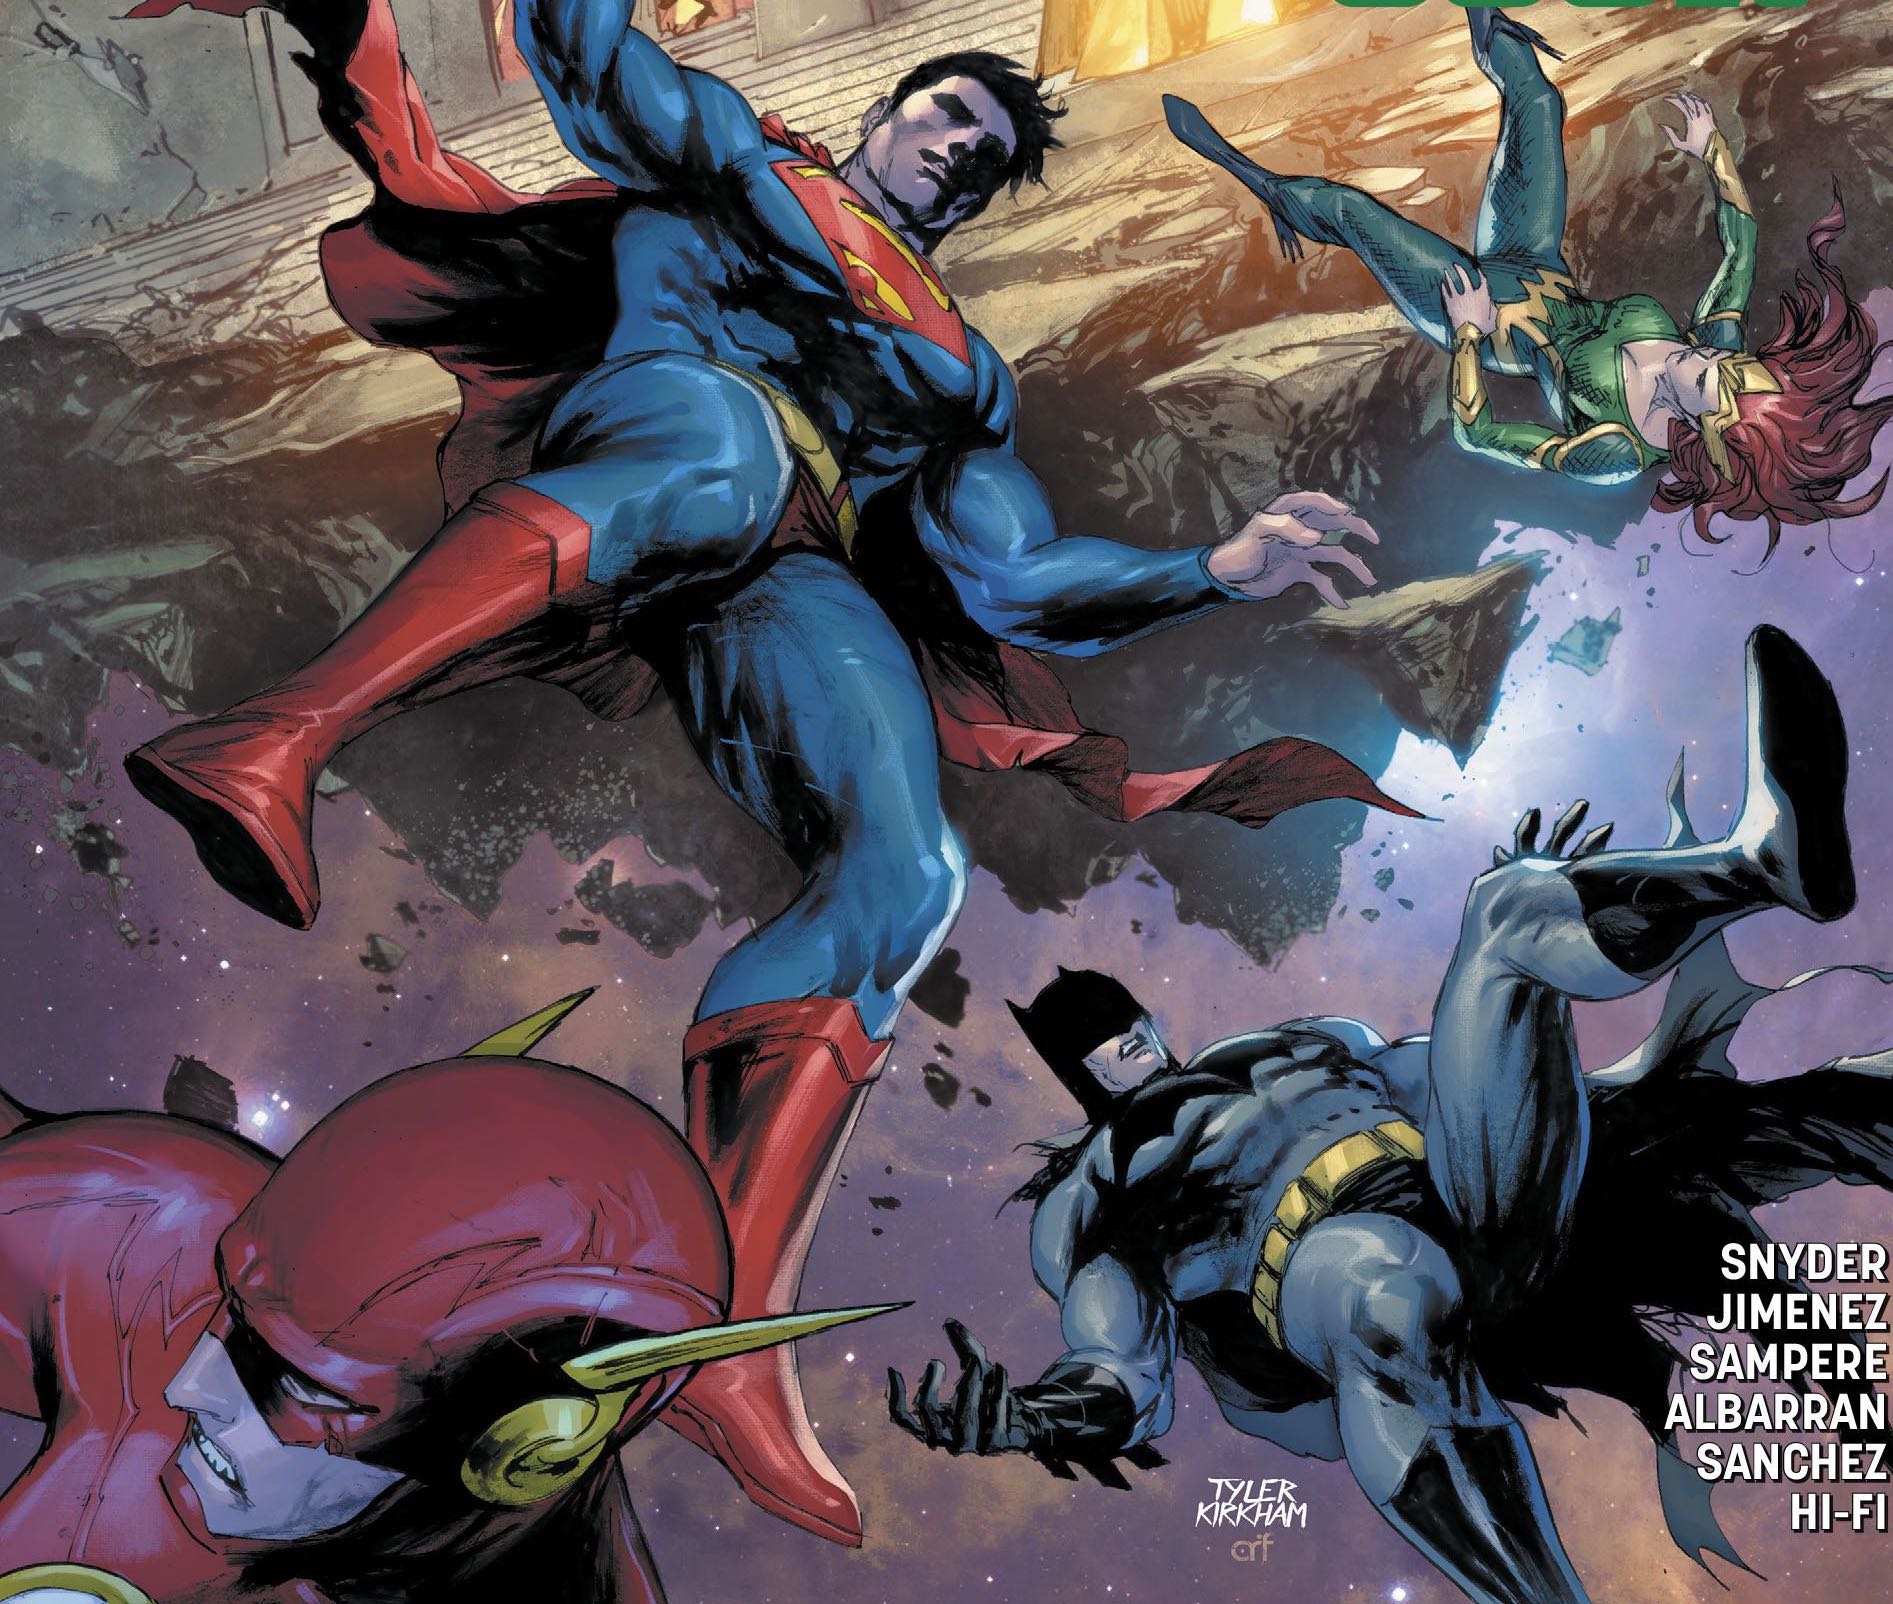 Justice League #39 Review